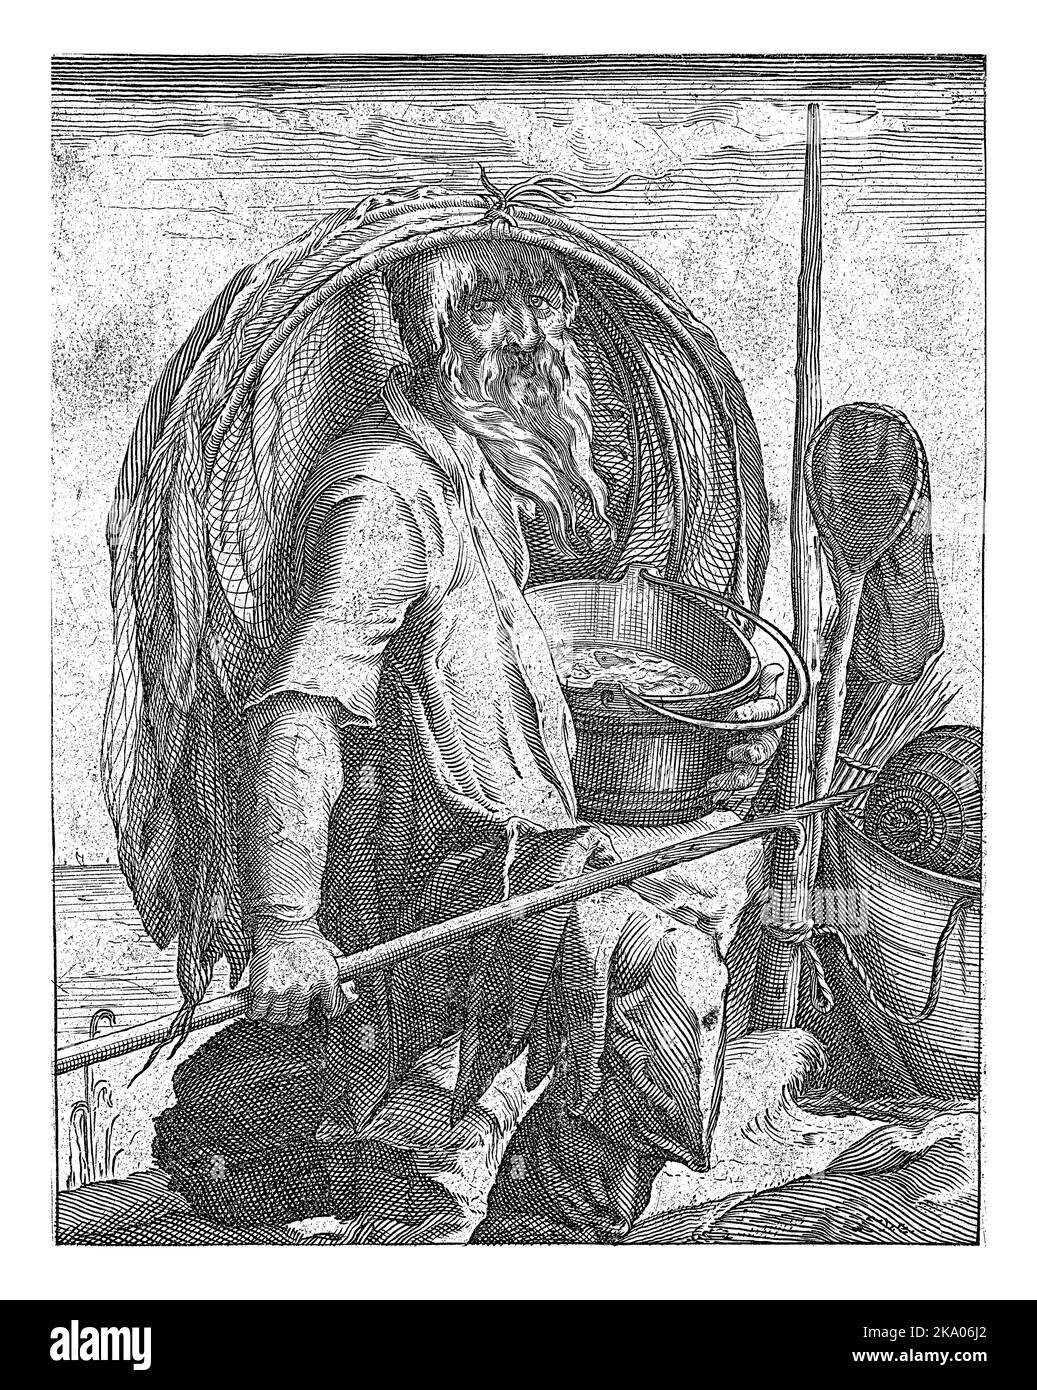 Un pescatore con i suoi attrezzi (rete, secchio, arpione) in mano. Simboleggia l'elemento dell'acqua. La stampa ha una didascalia olandese con un lamento del Foto Stock